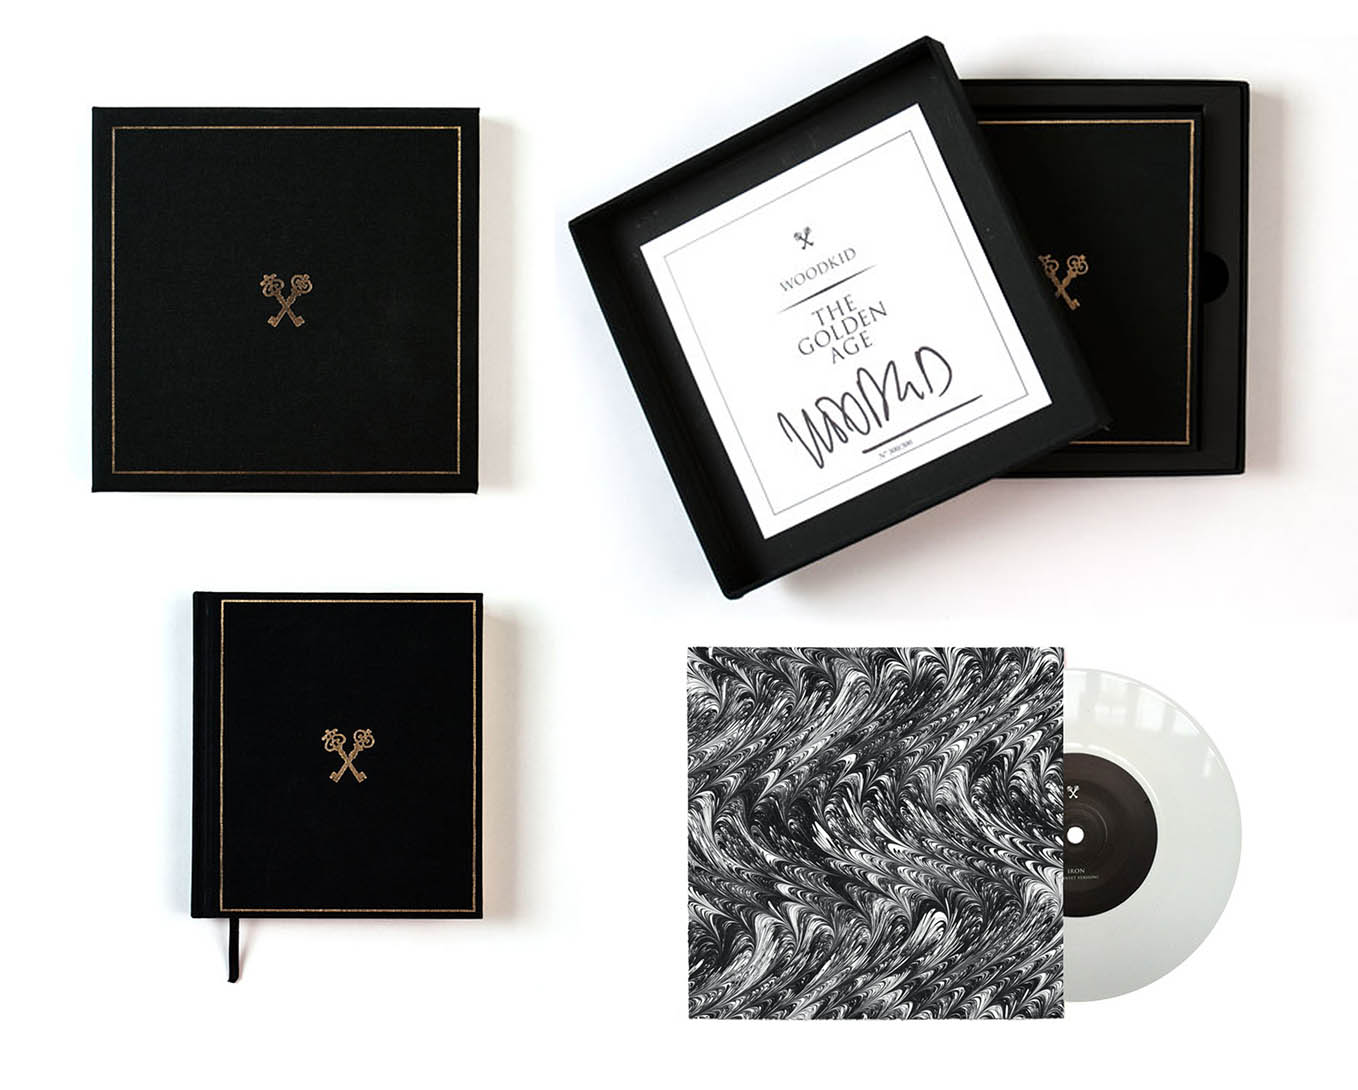 woodkid the golden age packaging coffret deluxe album case vinyle book labelgum 2013 graphisme print